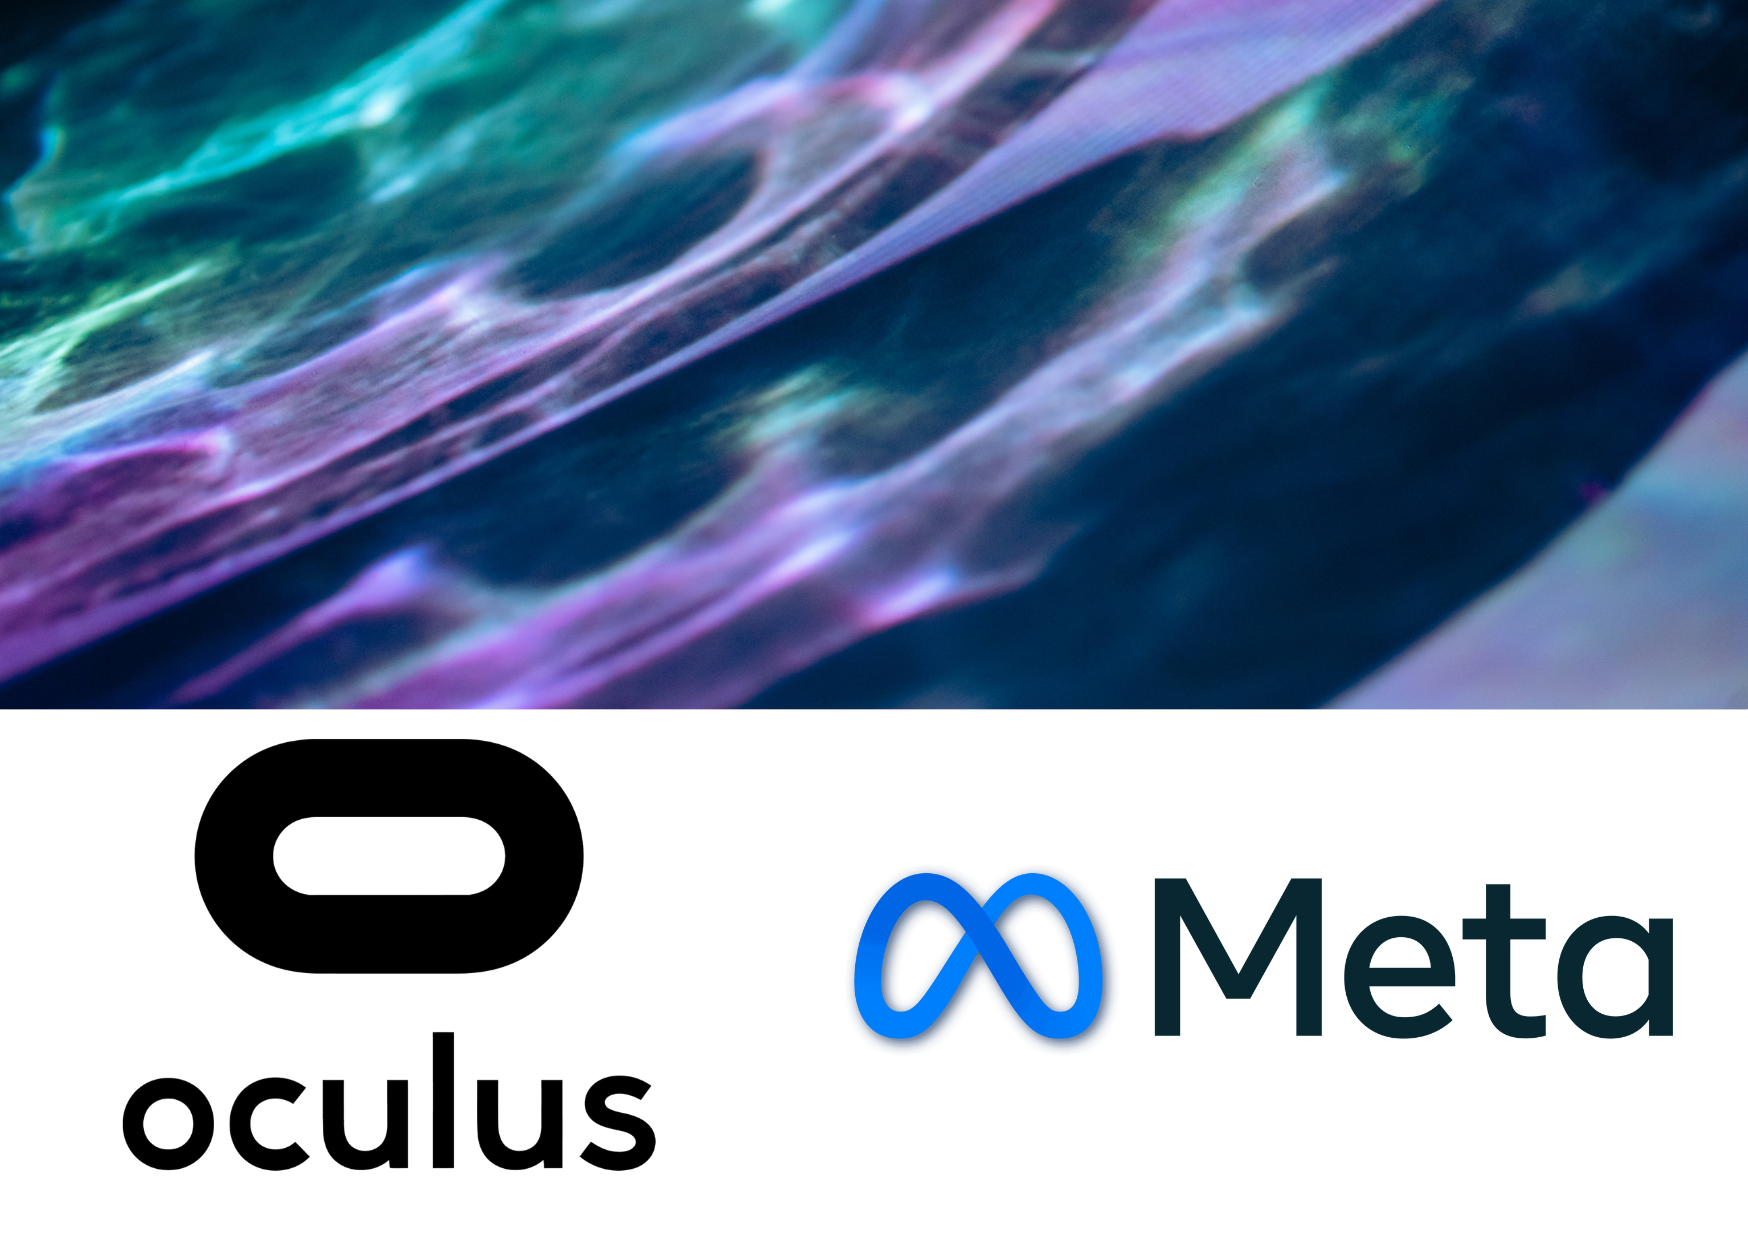 Warum heißt Oculus jetzt Meta?